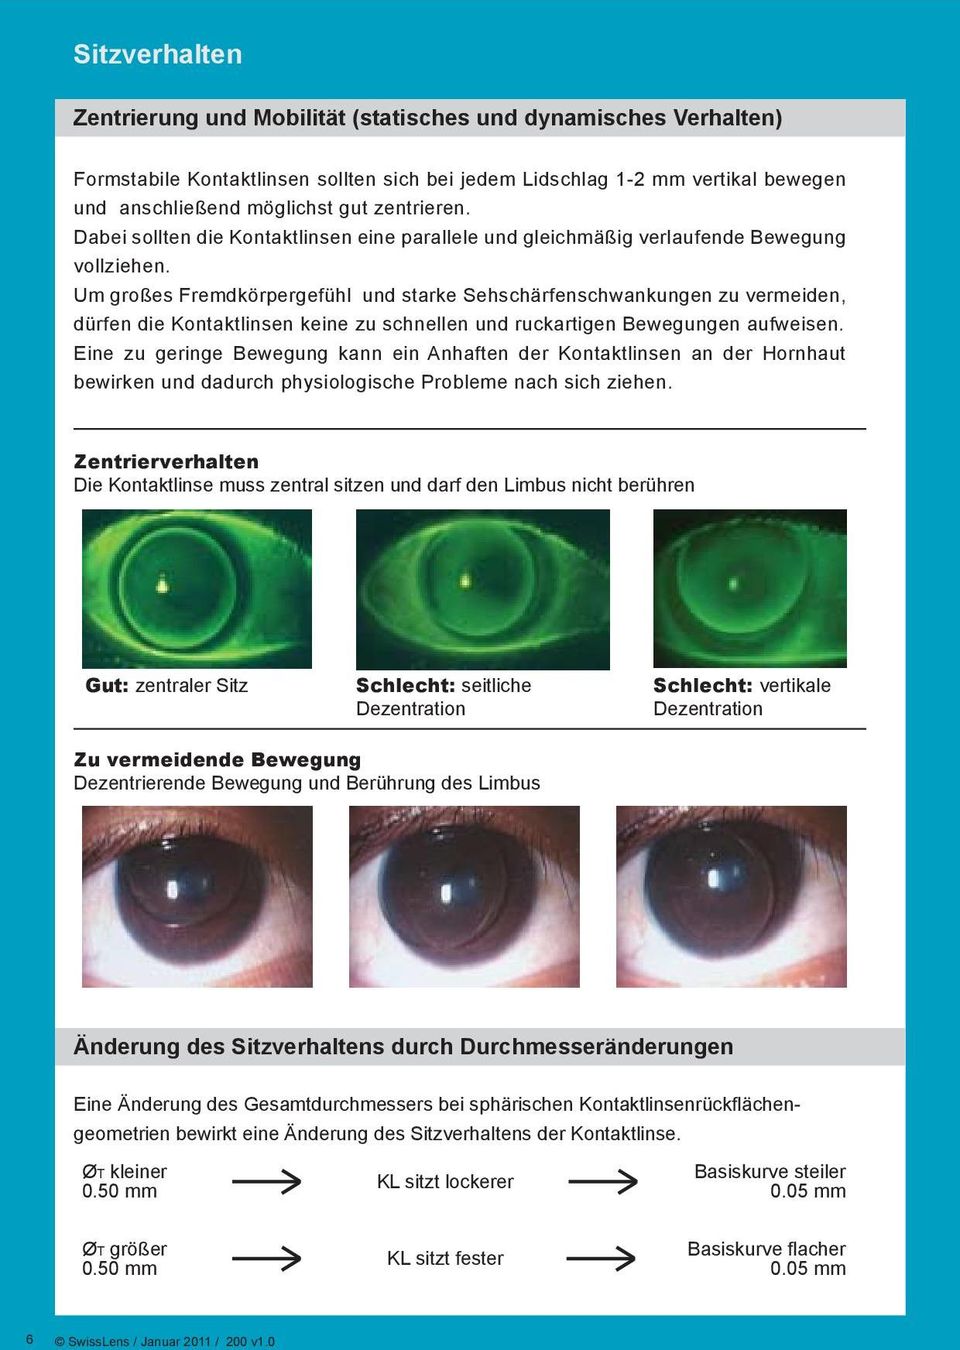 Um großes Fremdkörpergefühl und starke Sehschärfenschwankungen zu vermeiden, dürfen die Kontaktlinsen keine zu schnellen und ruckartigen Bewegungen aufweisen.